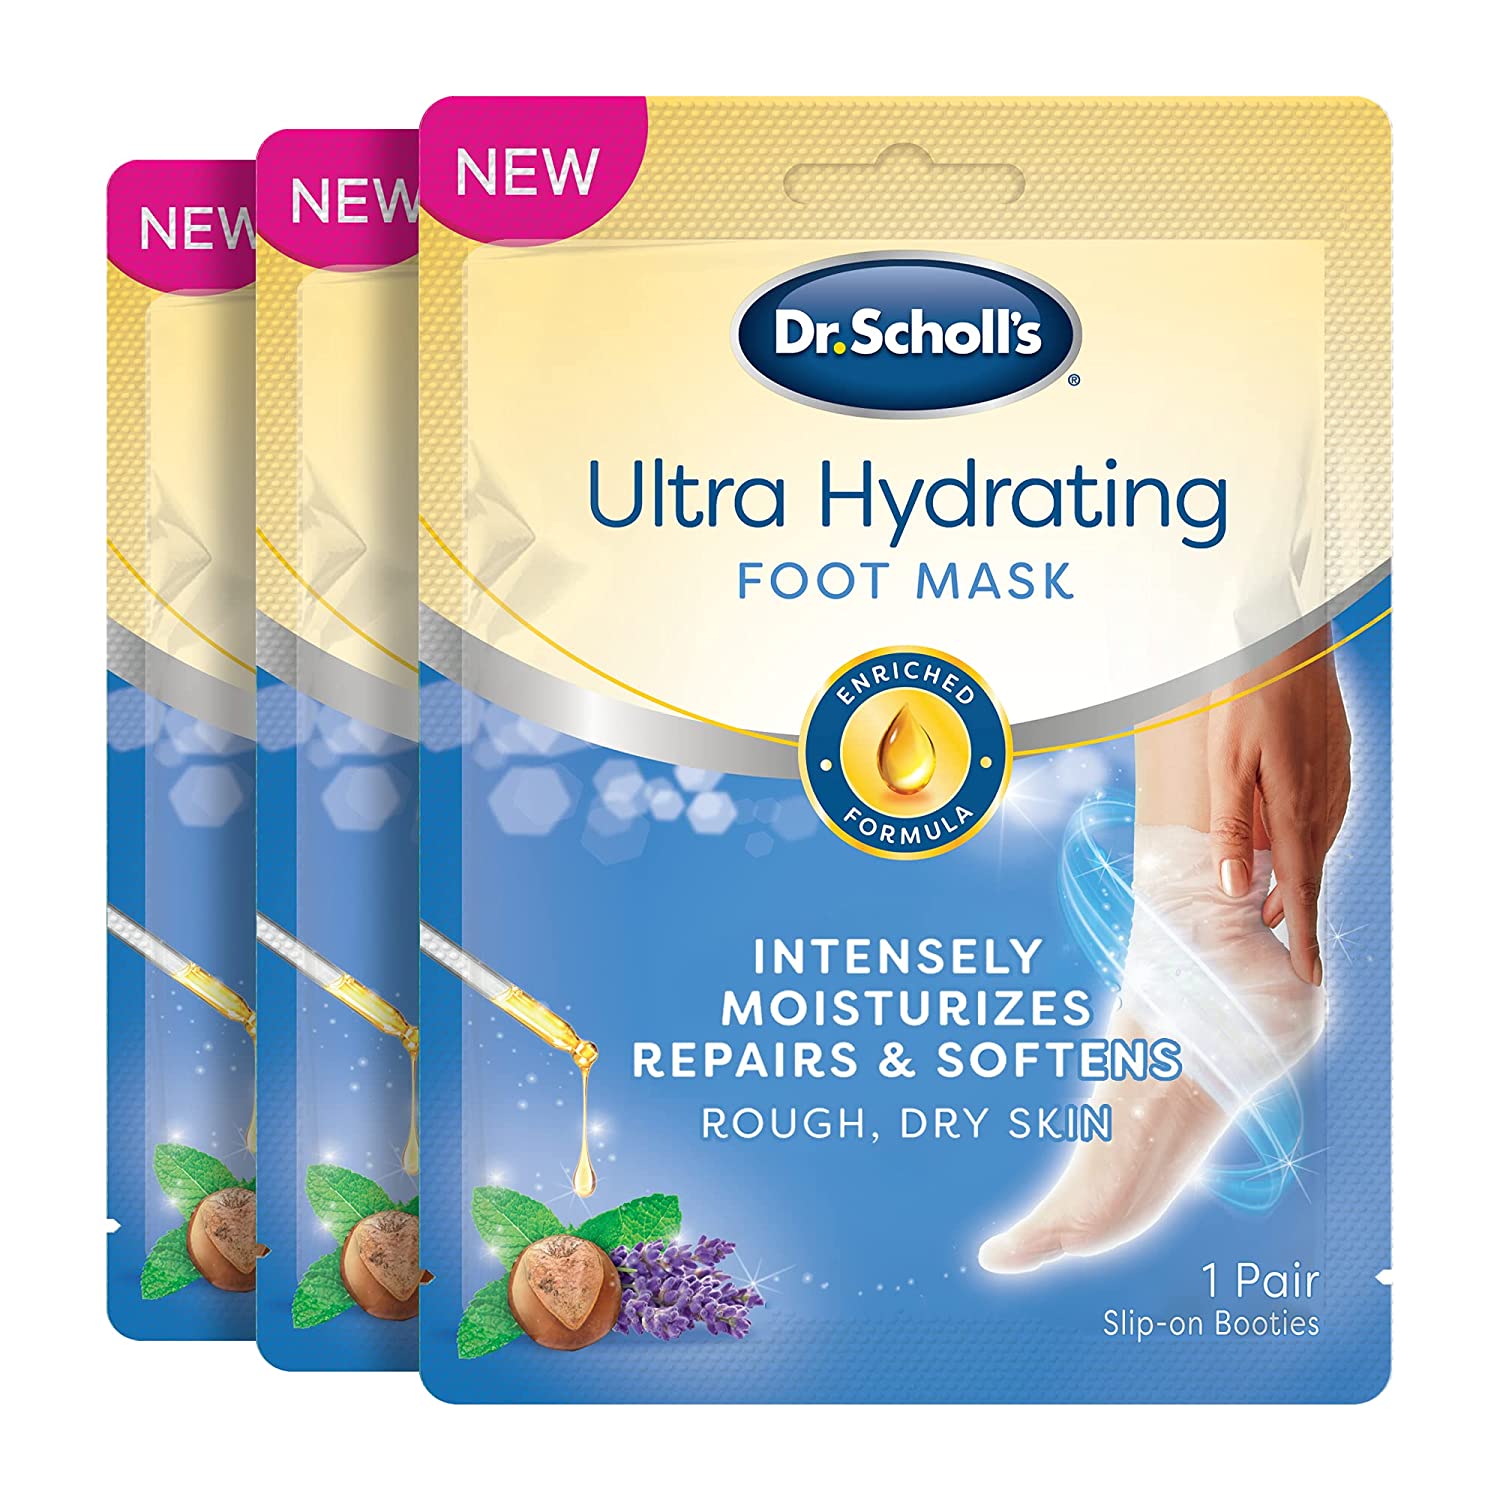 新色追加 Dr.Schollの超保湿フットピールマスク3パック尿素で強力な保湿と荒れた乾燥肌の柔軟化3Co OUTLET SALE